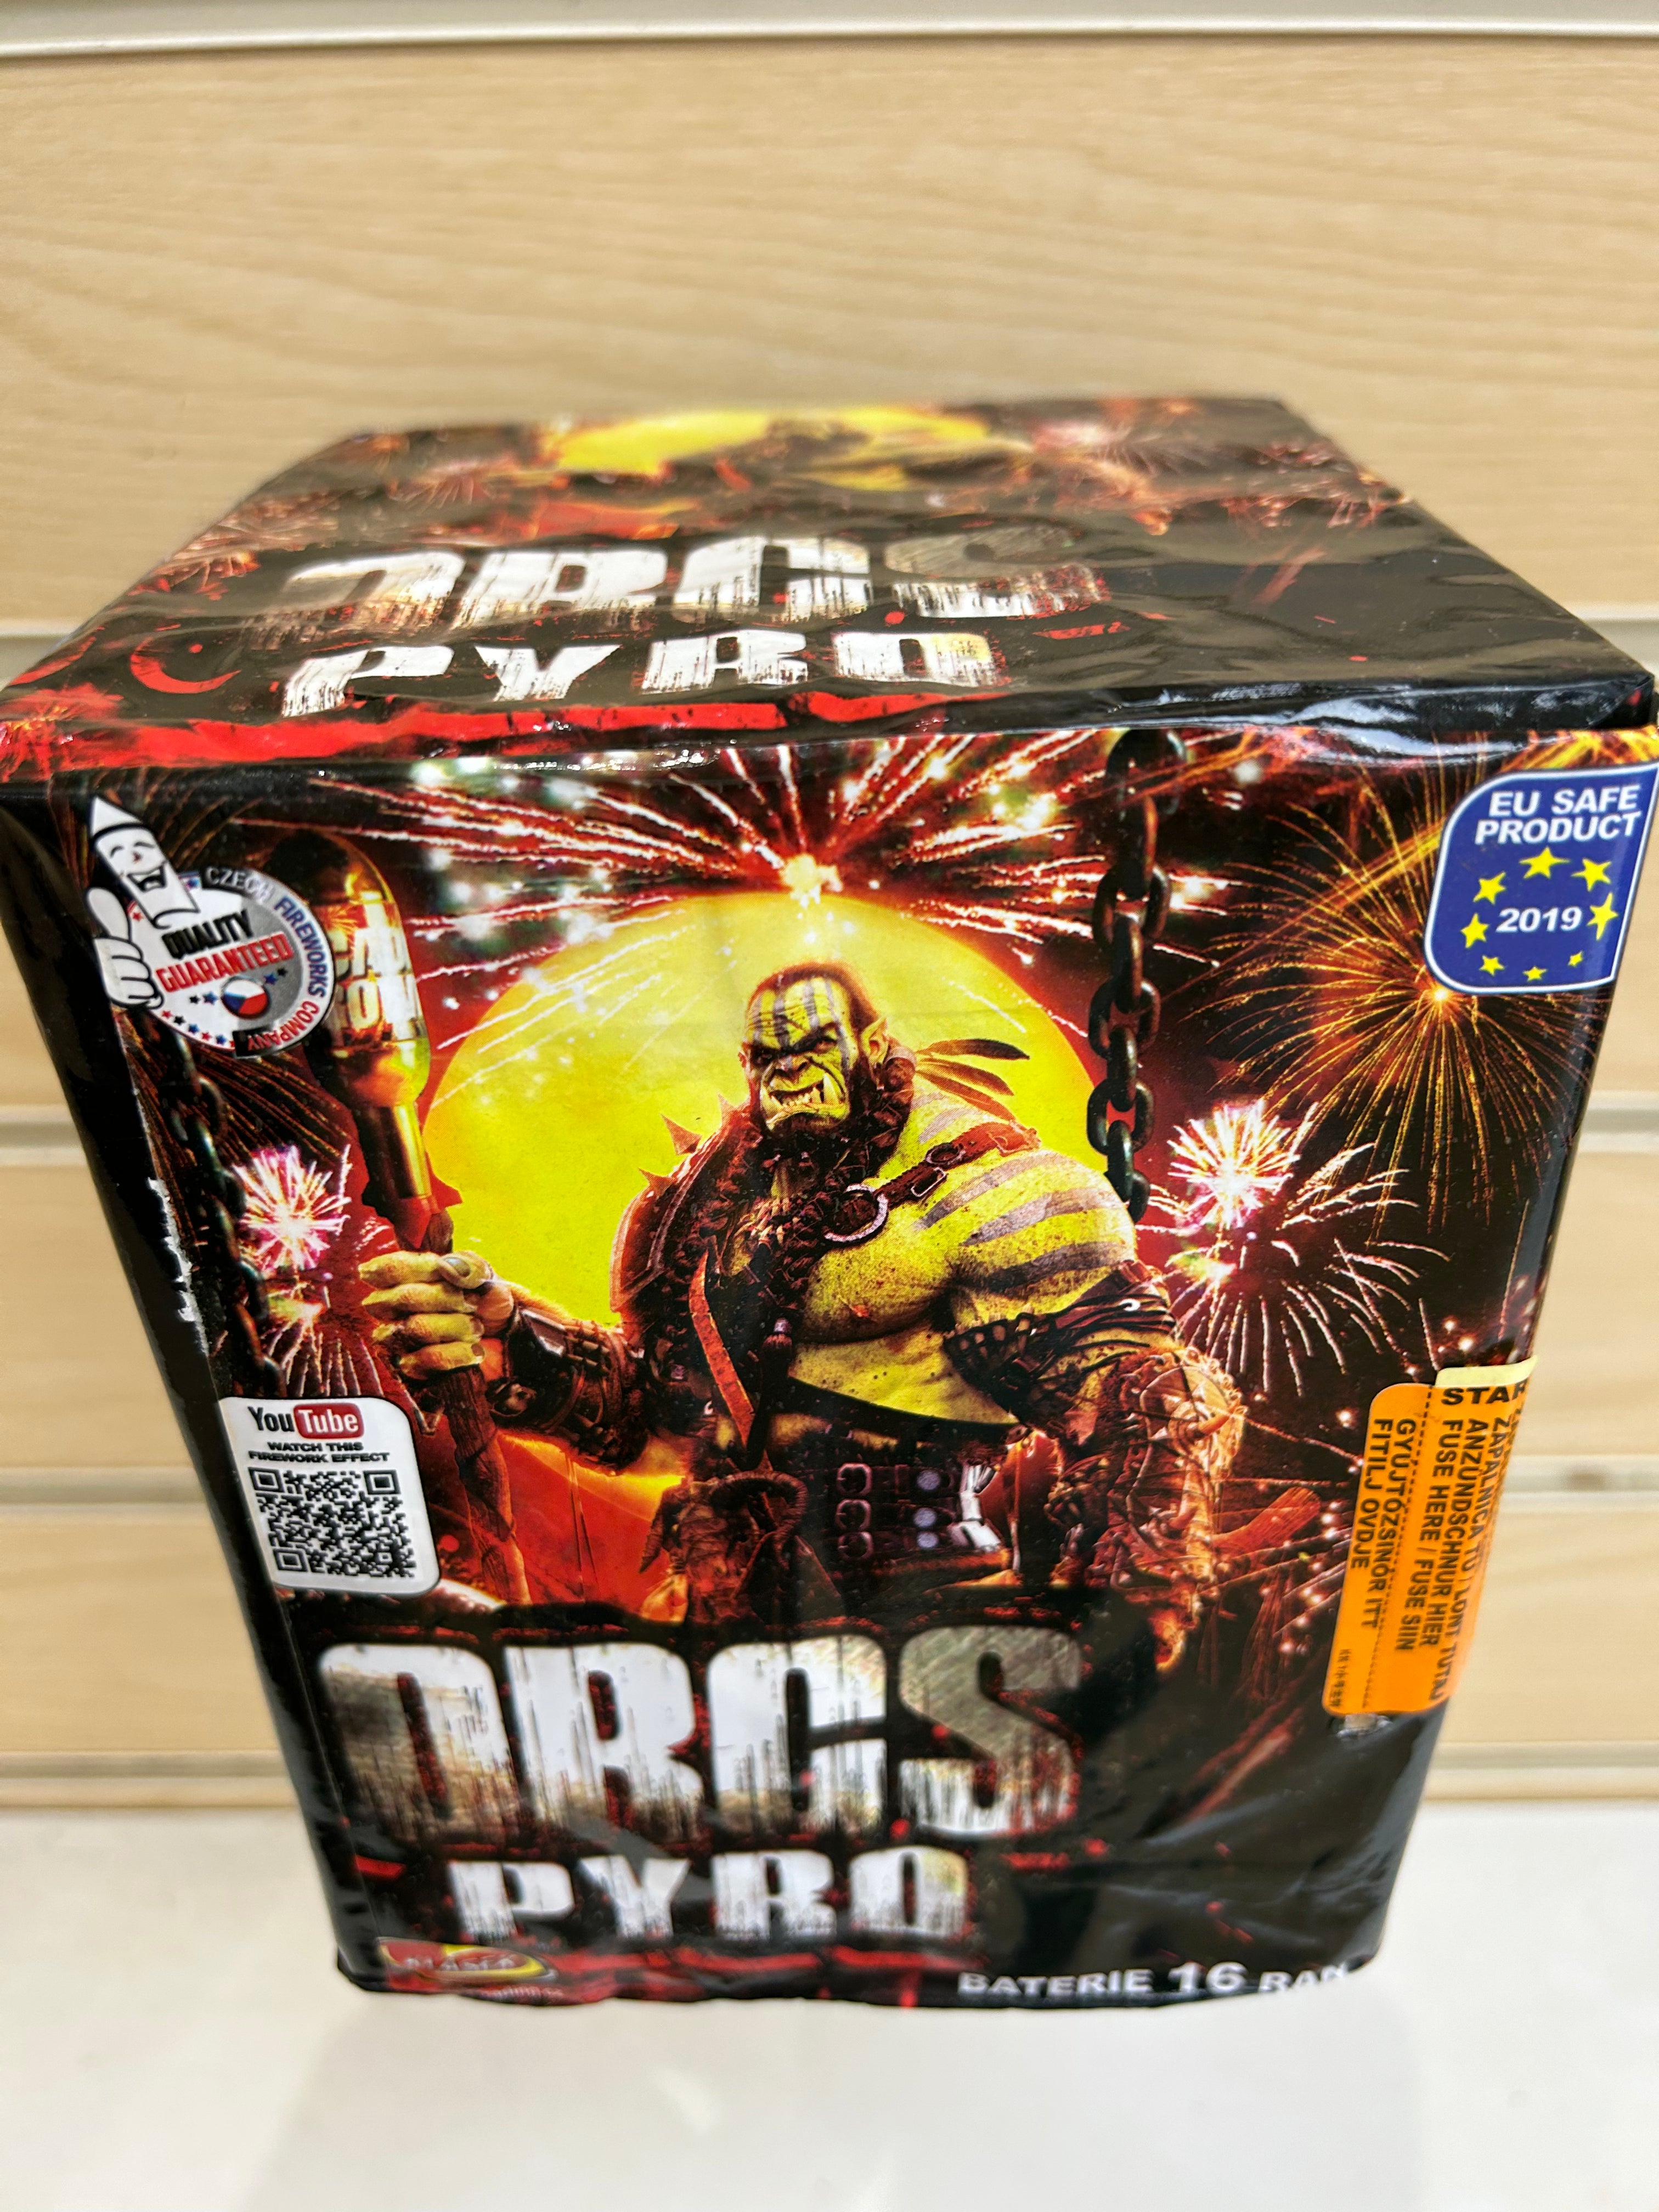 Orcs pyro , 16 Massive Shots